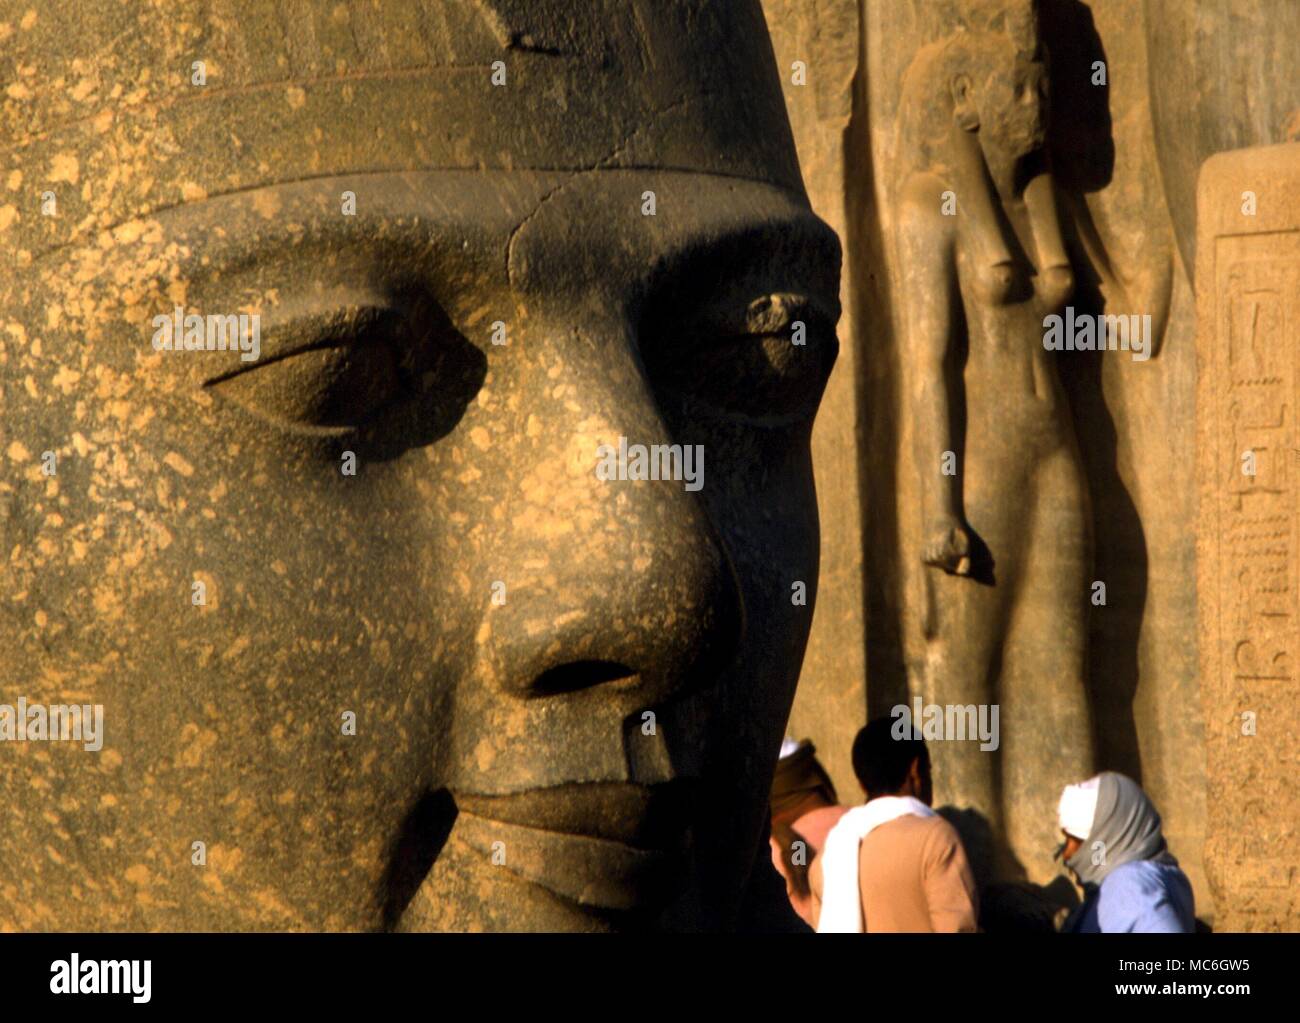 La Mitología egipcia - gigantesca cabeza del faraón Ramsés II fuera del templo en Luxor, Egipto Foto de stock